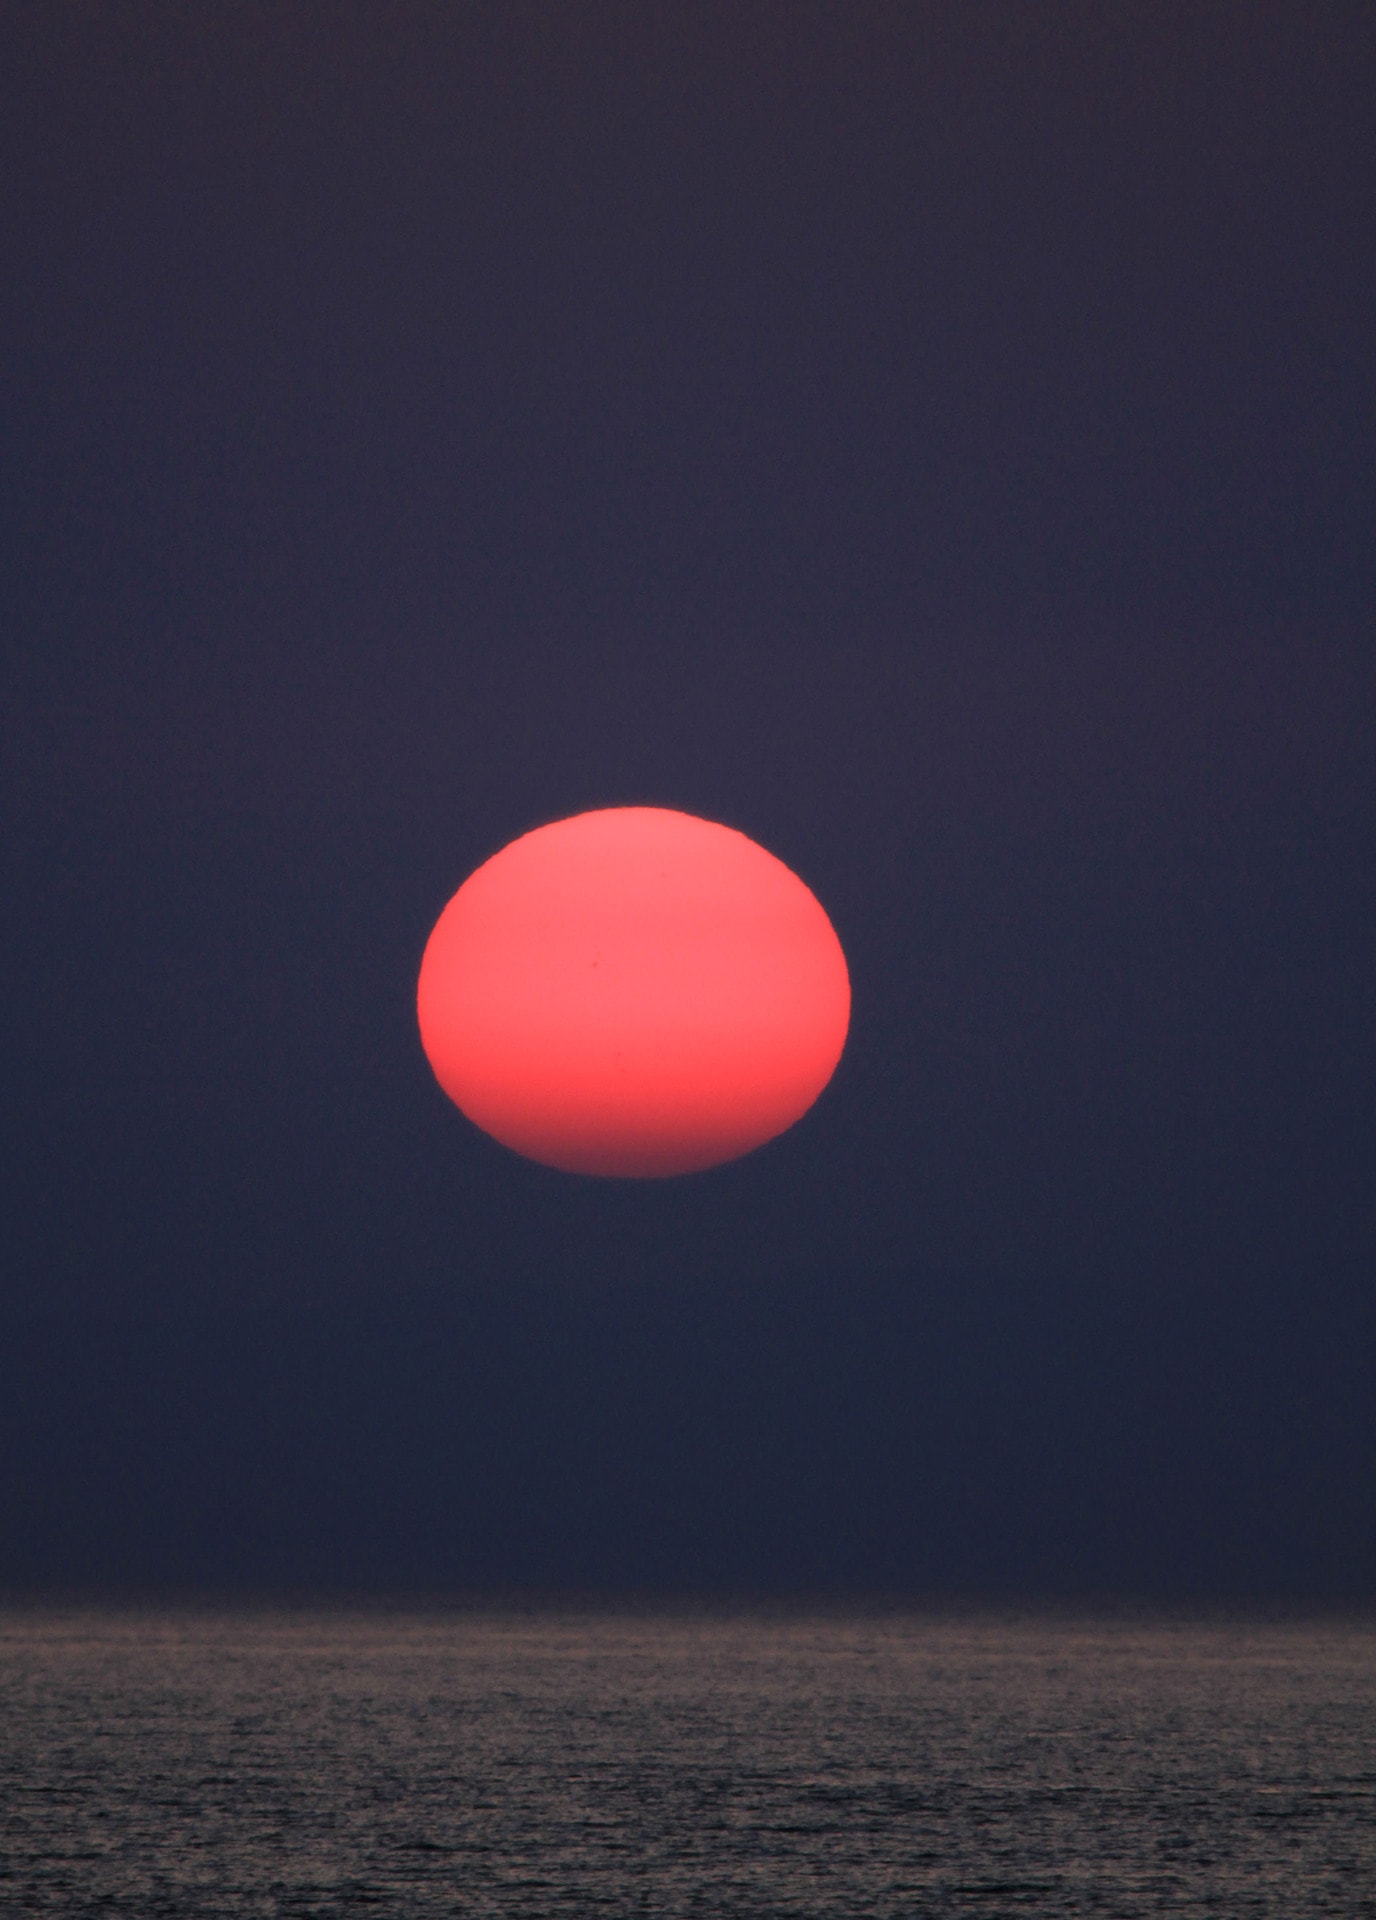 背景が黒いので赤が目立つ夕日 海彩空間 プラス